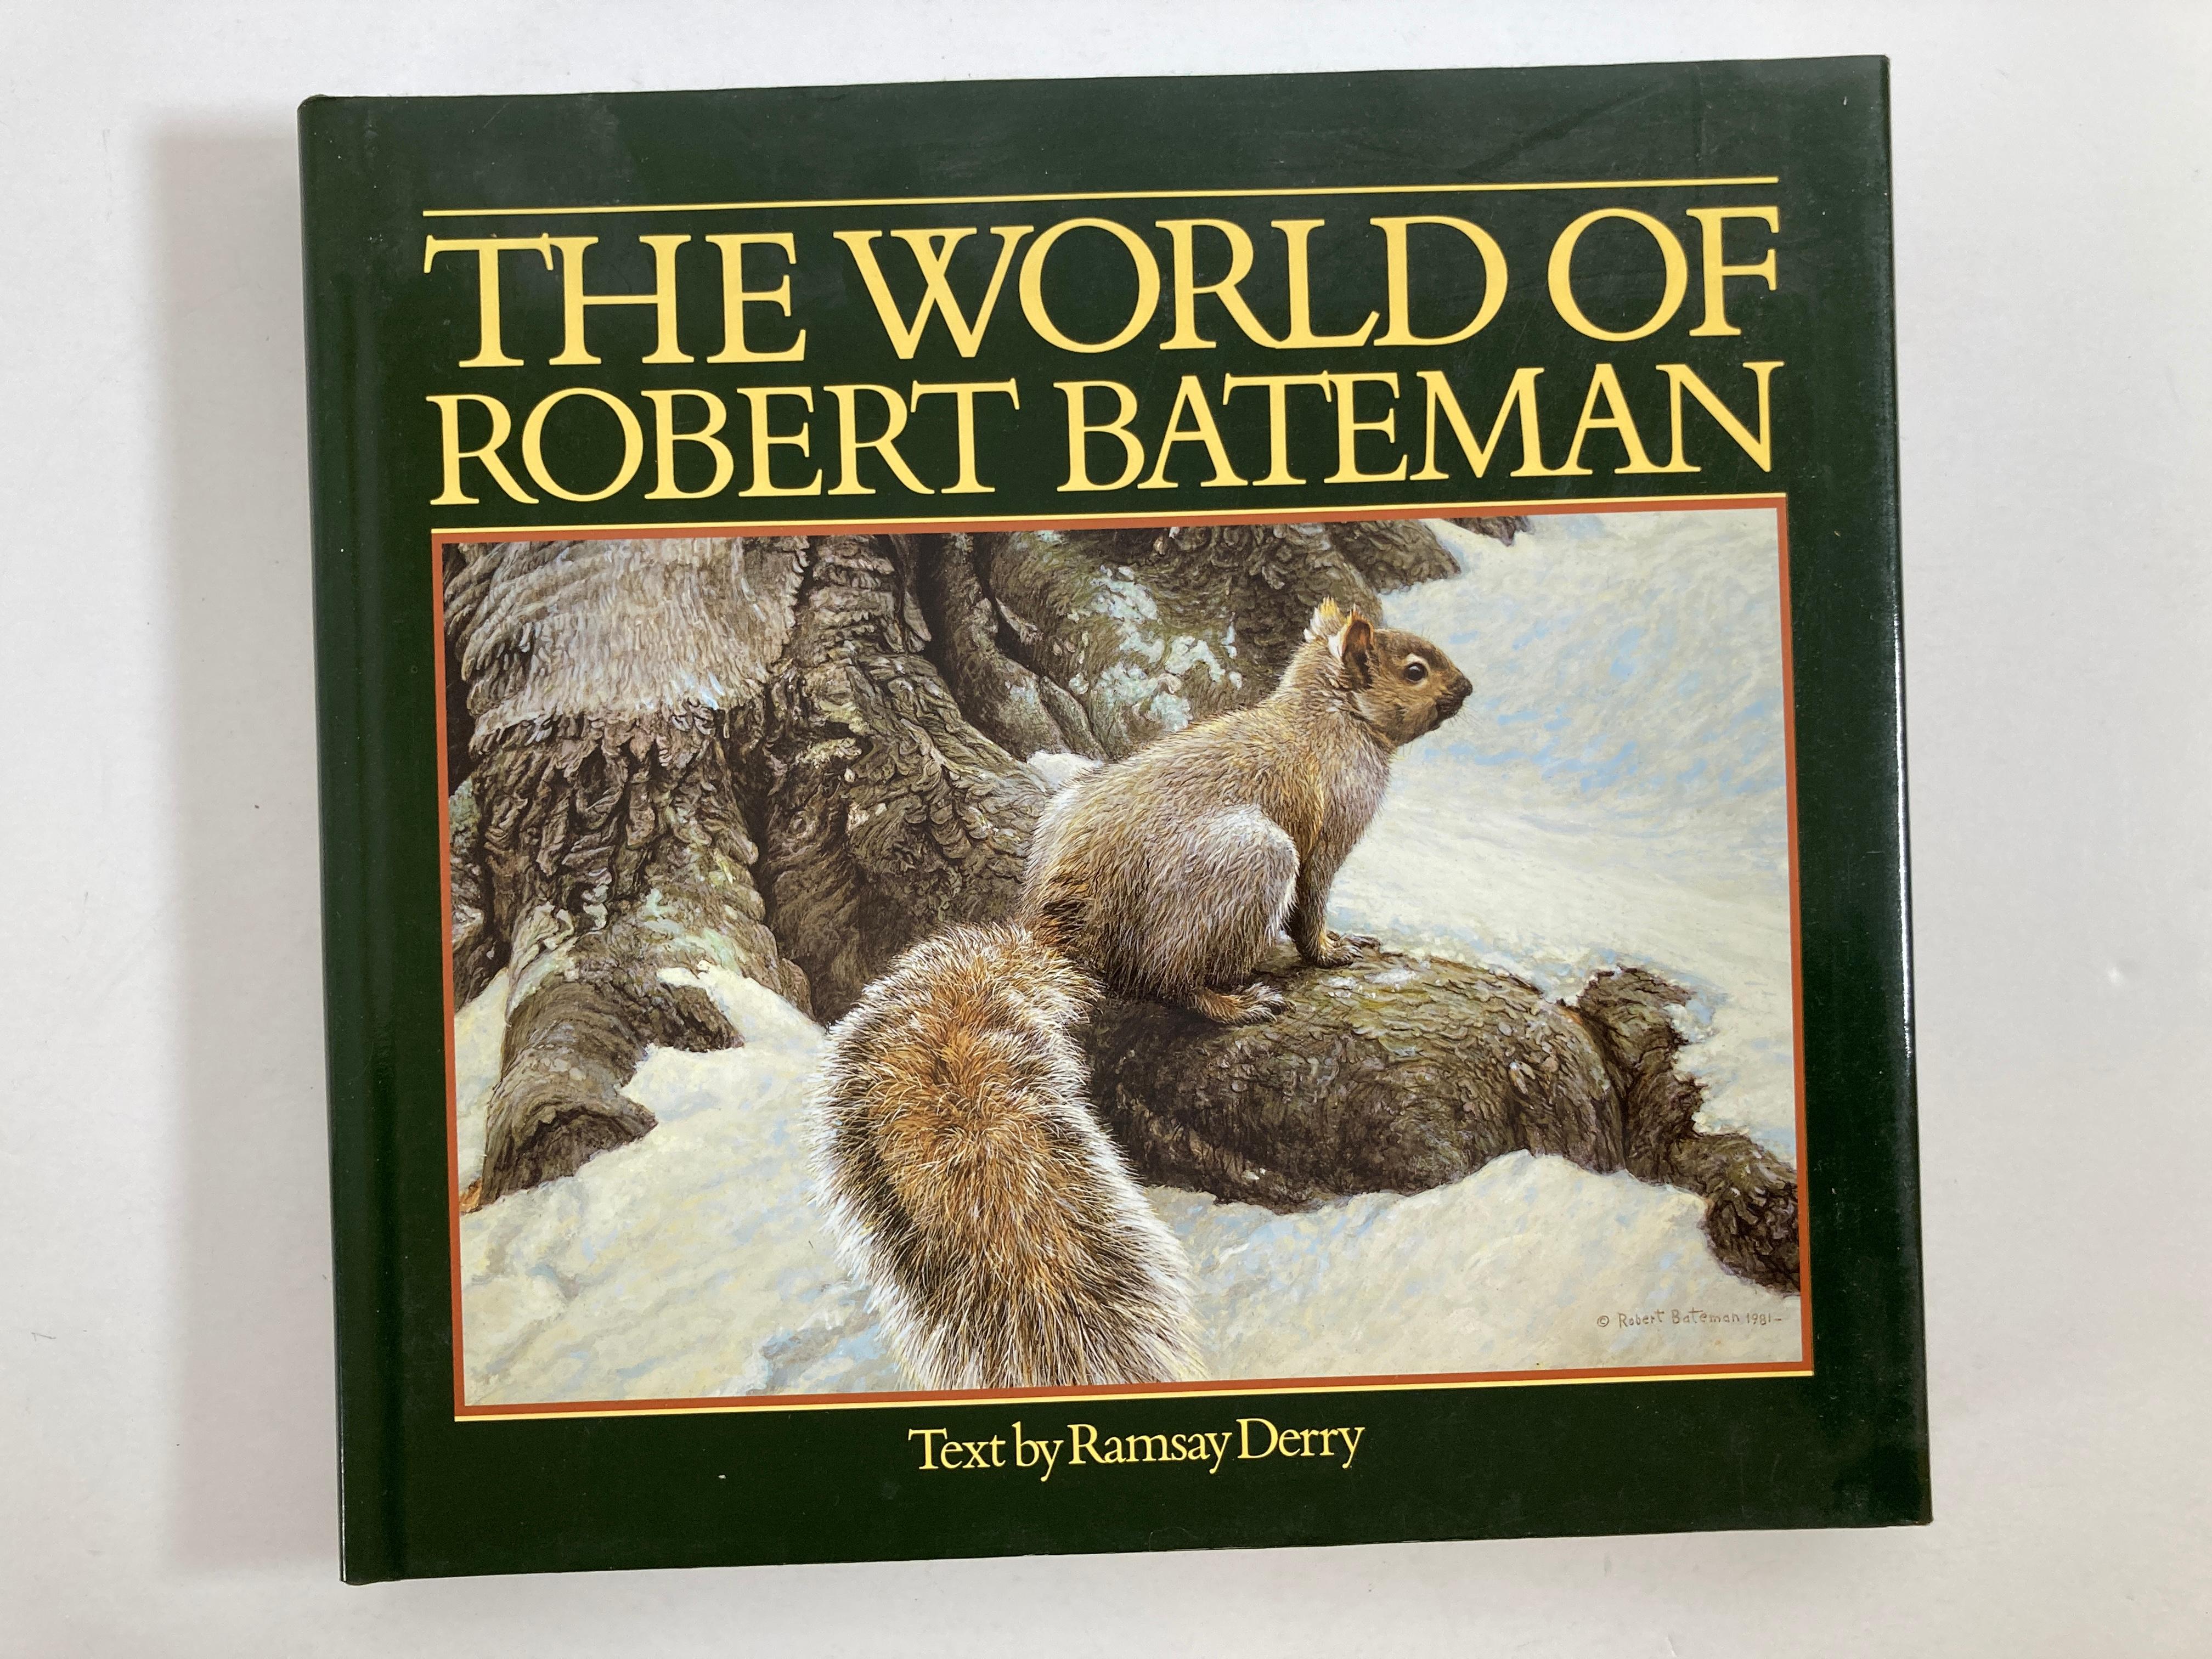 Le monde de Robert Bateman
par Robert Bateman (artiste), Ramsay Derry, V. John Lee (conception).
Mettant en avant son message de protection de l'environnement, ce témoignage de l'important travail de Robert Bateman en tant qu'artiste et défenseur